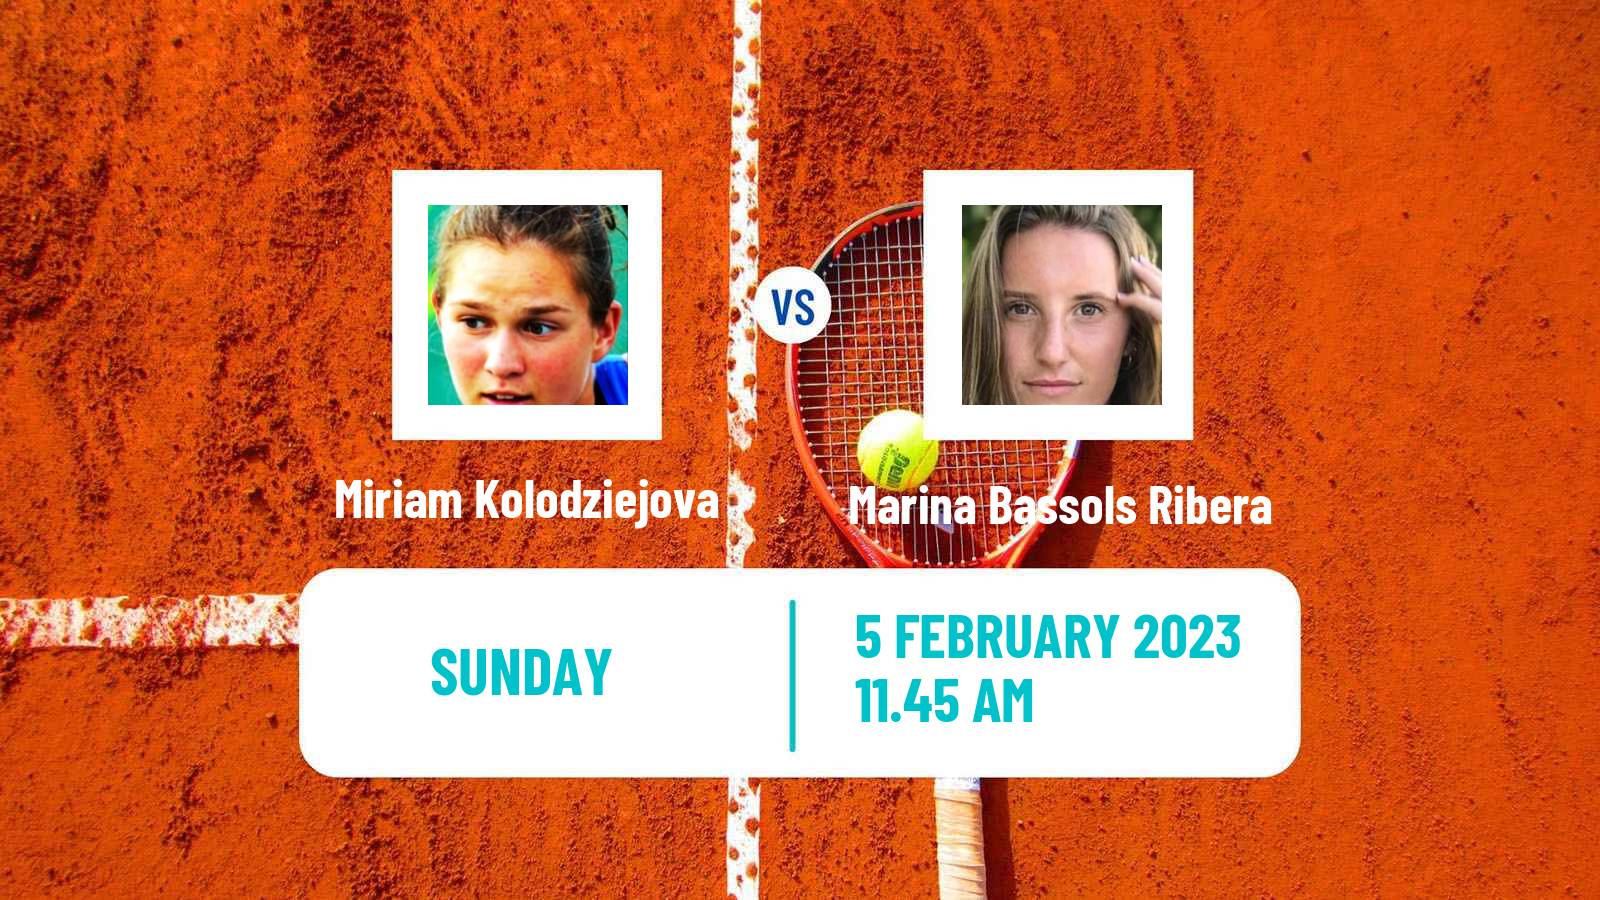 Tennis WTA Linz Miriam Kolodziejova - Marina Bassols Ribera